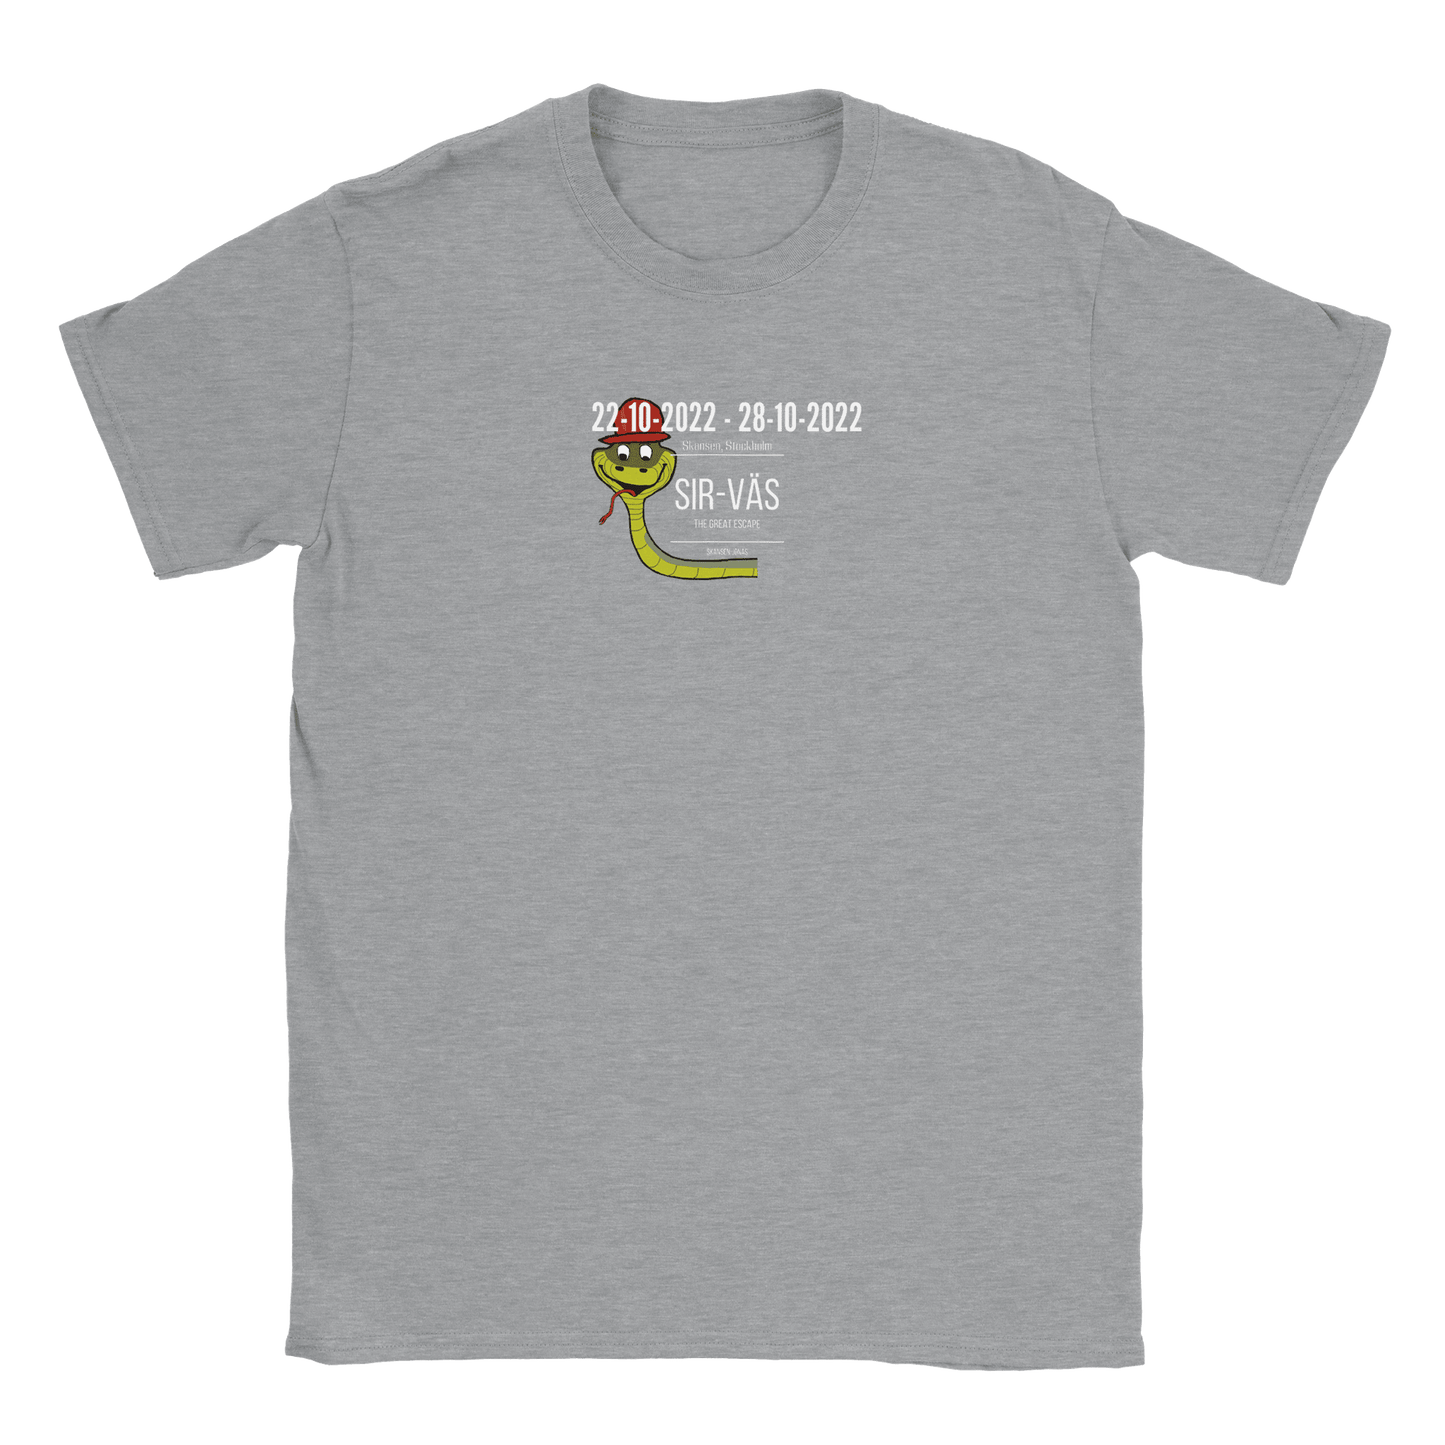 Sir-Väs - T-shirt Sports Grey